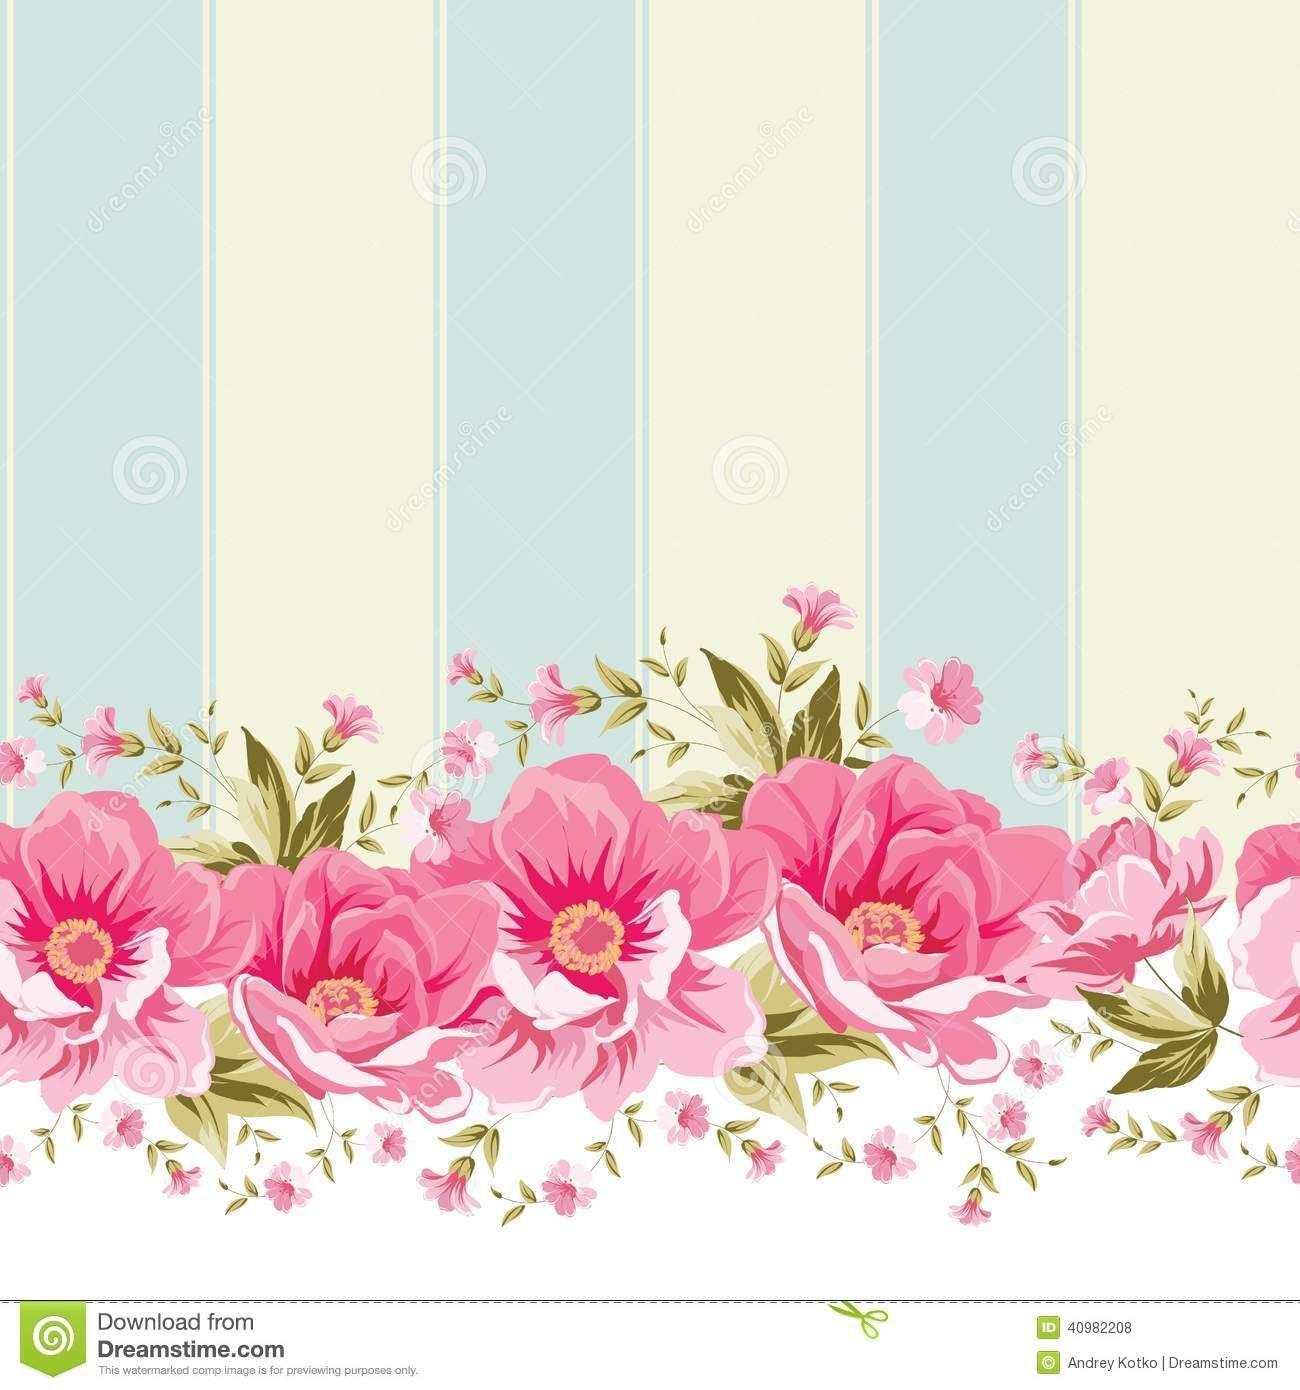 Vintage flower border. Ornate pink flower border with tile. Elegant